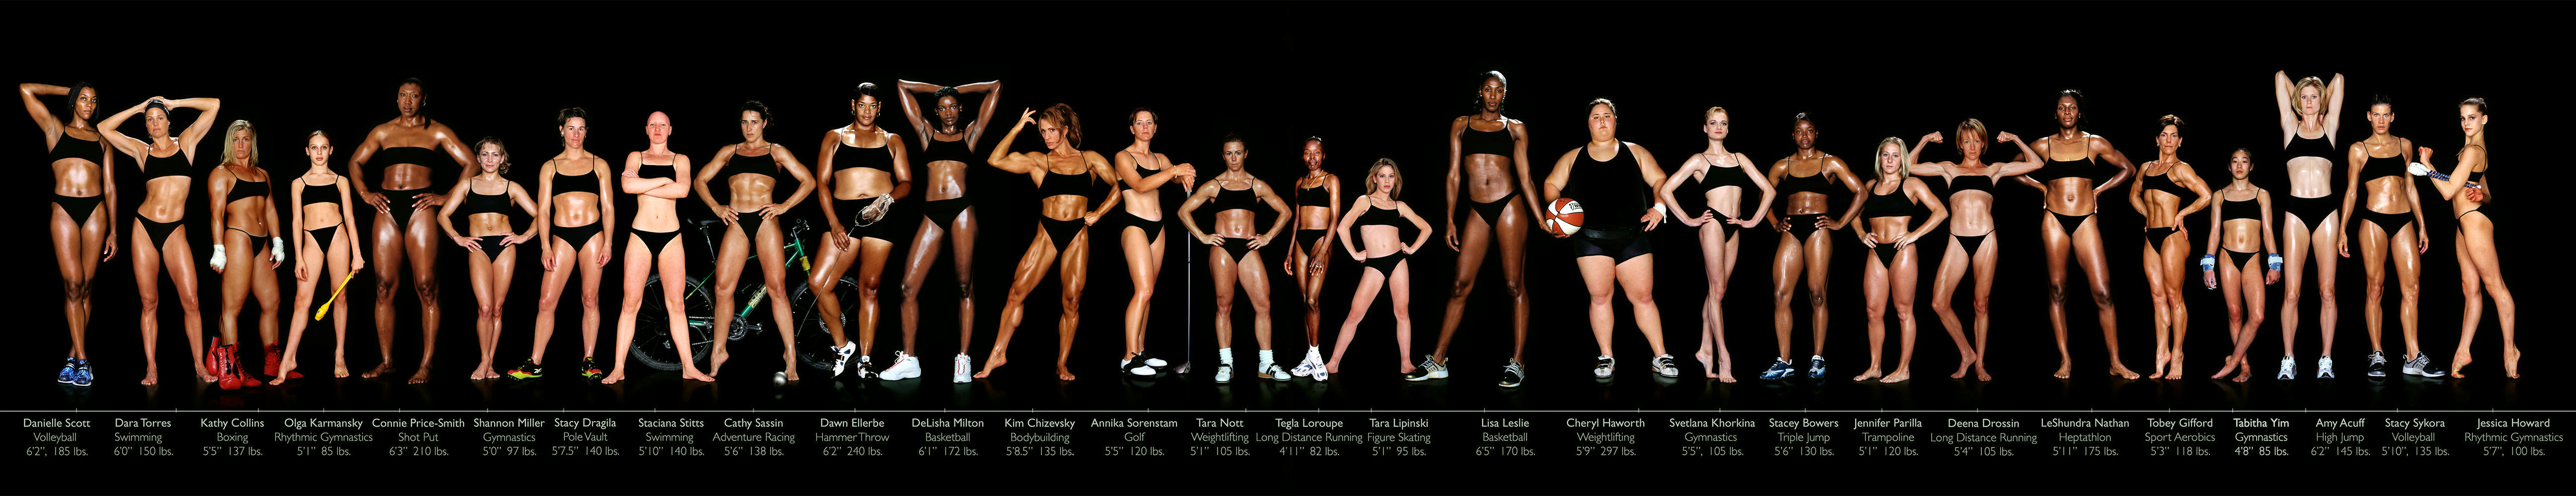 female athletes.jpg.